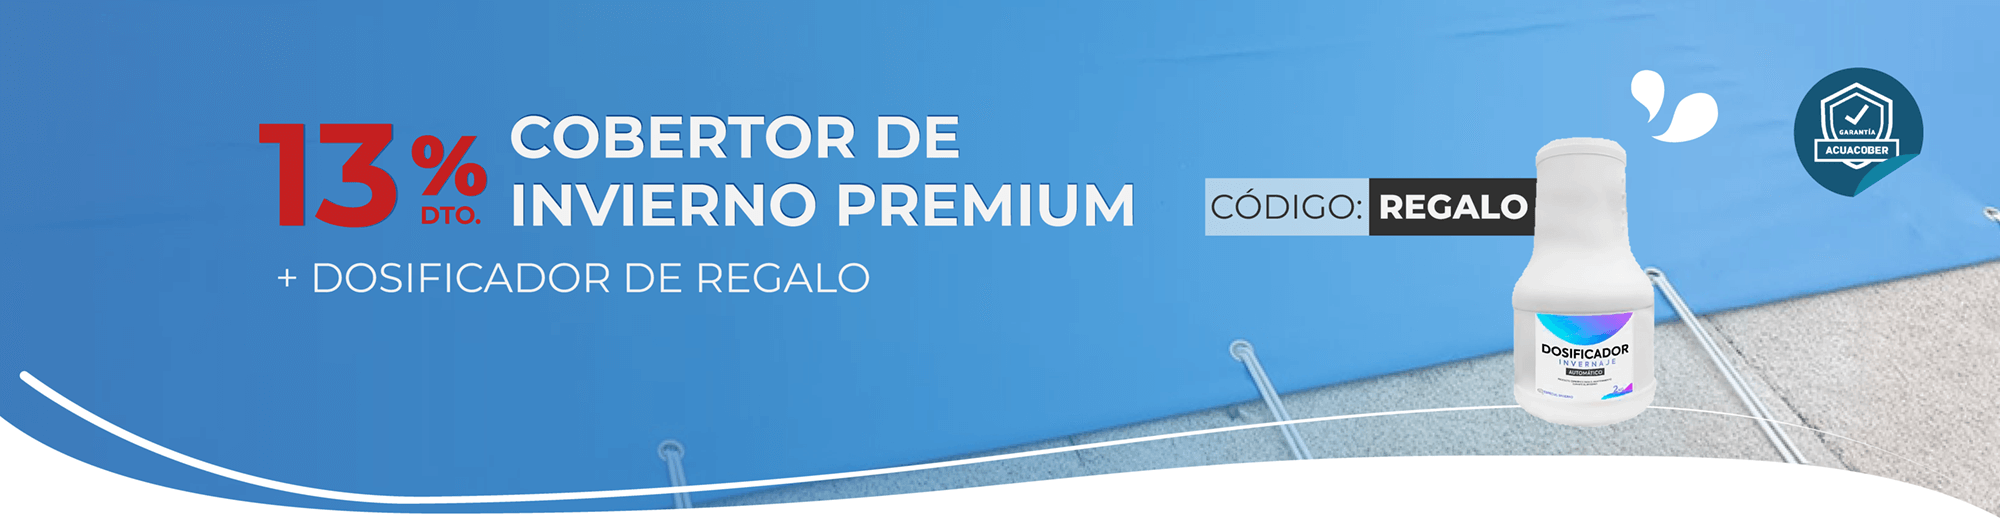 Promo Acuacober-i Premium + Dosificador